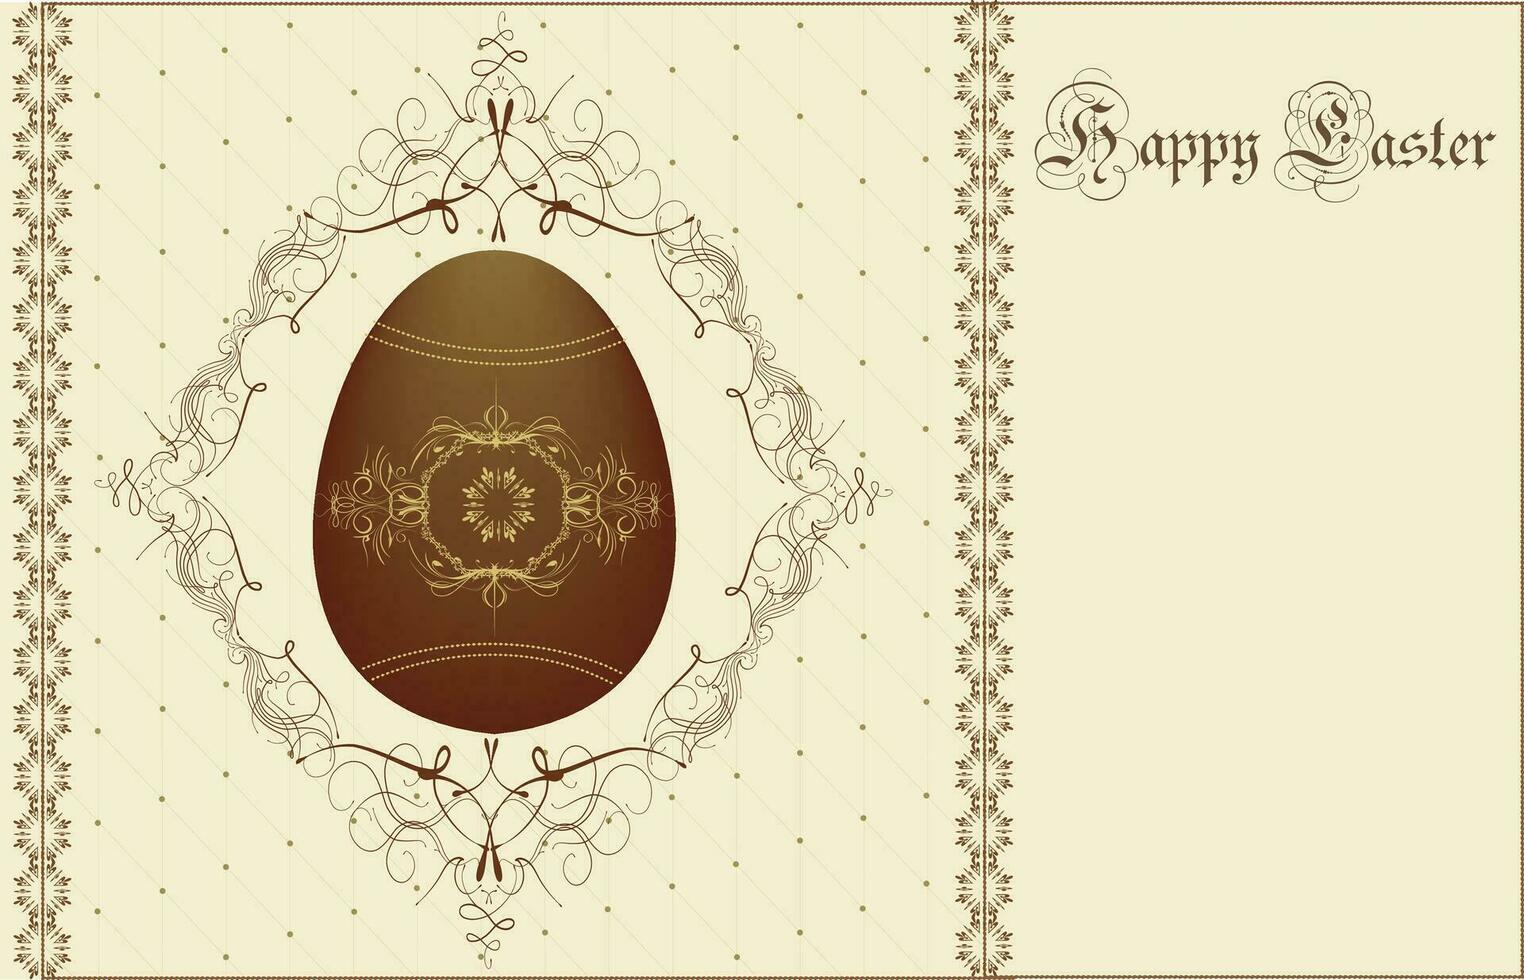 Clásico Pascua de Resurrección invitación tarjeta con florido elegante resumen floral diseño vector